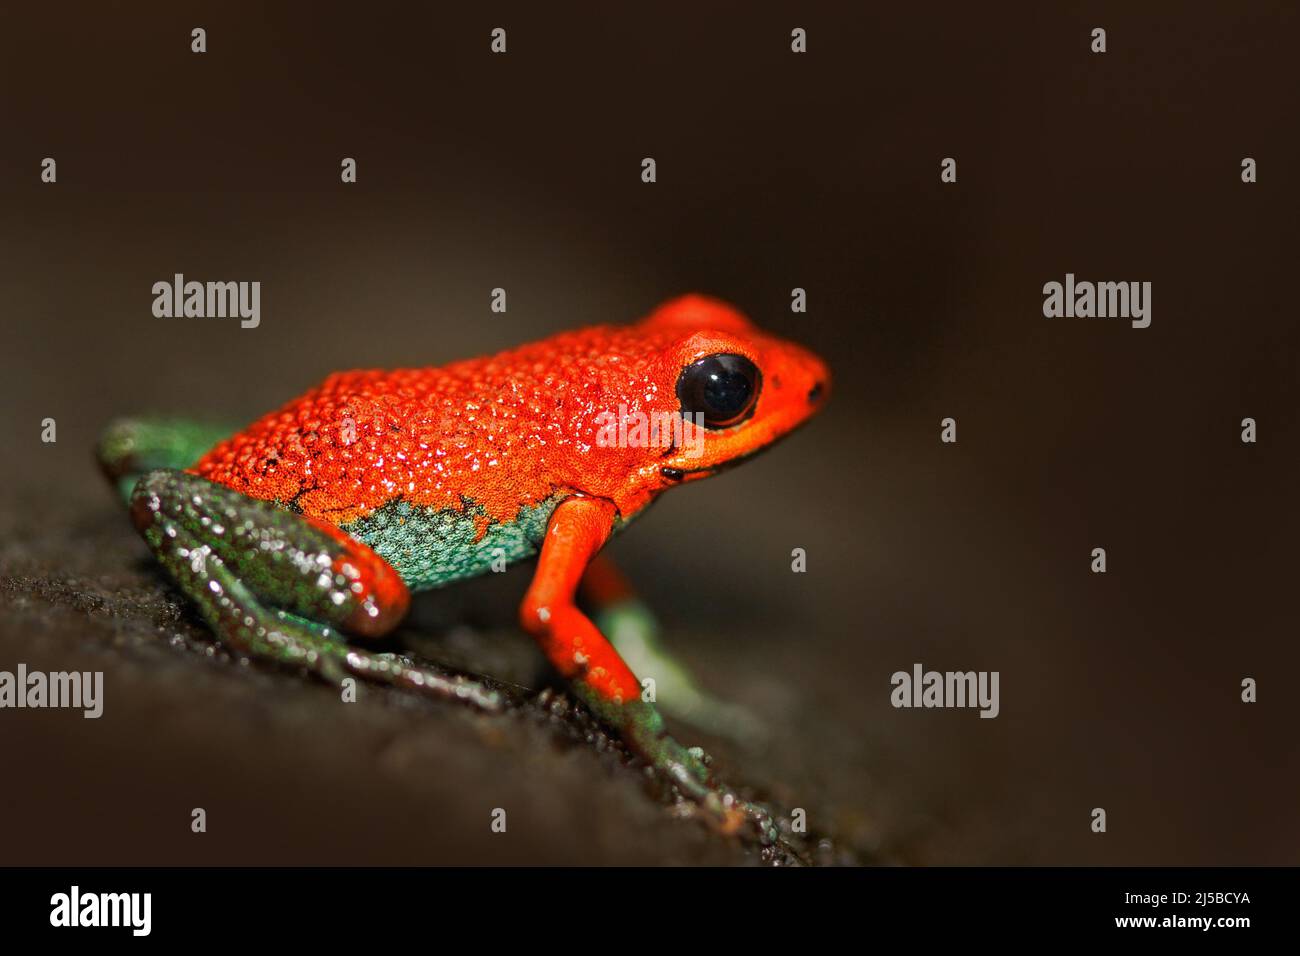 Roter Giftfrosch Granularer Giftpfeilfrosch, Dendrobat granuliferus, im Naturlebensraum Costa Rica. Seltene Ampphibien im Tropenwald. Schließen-U Stockfoto